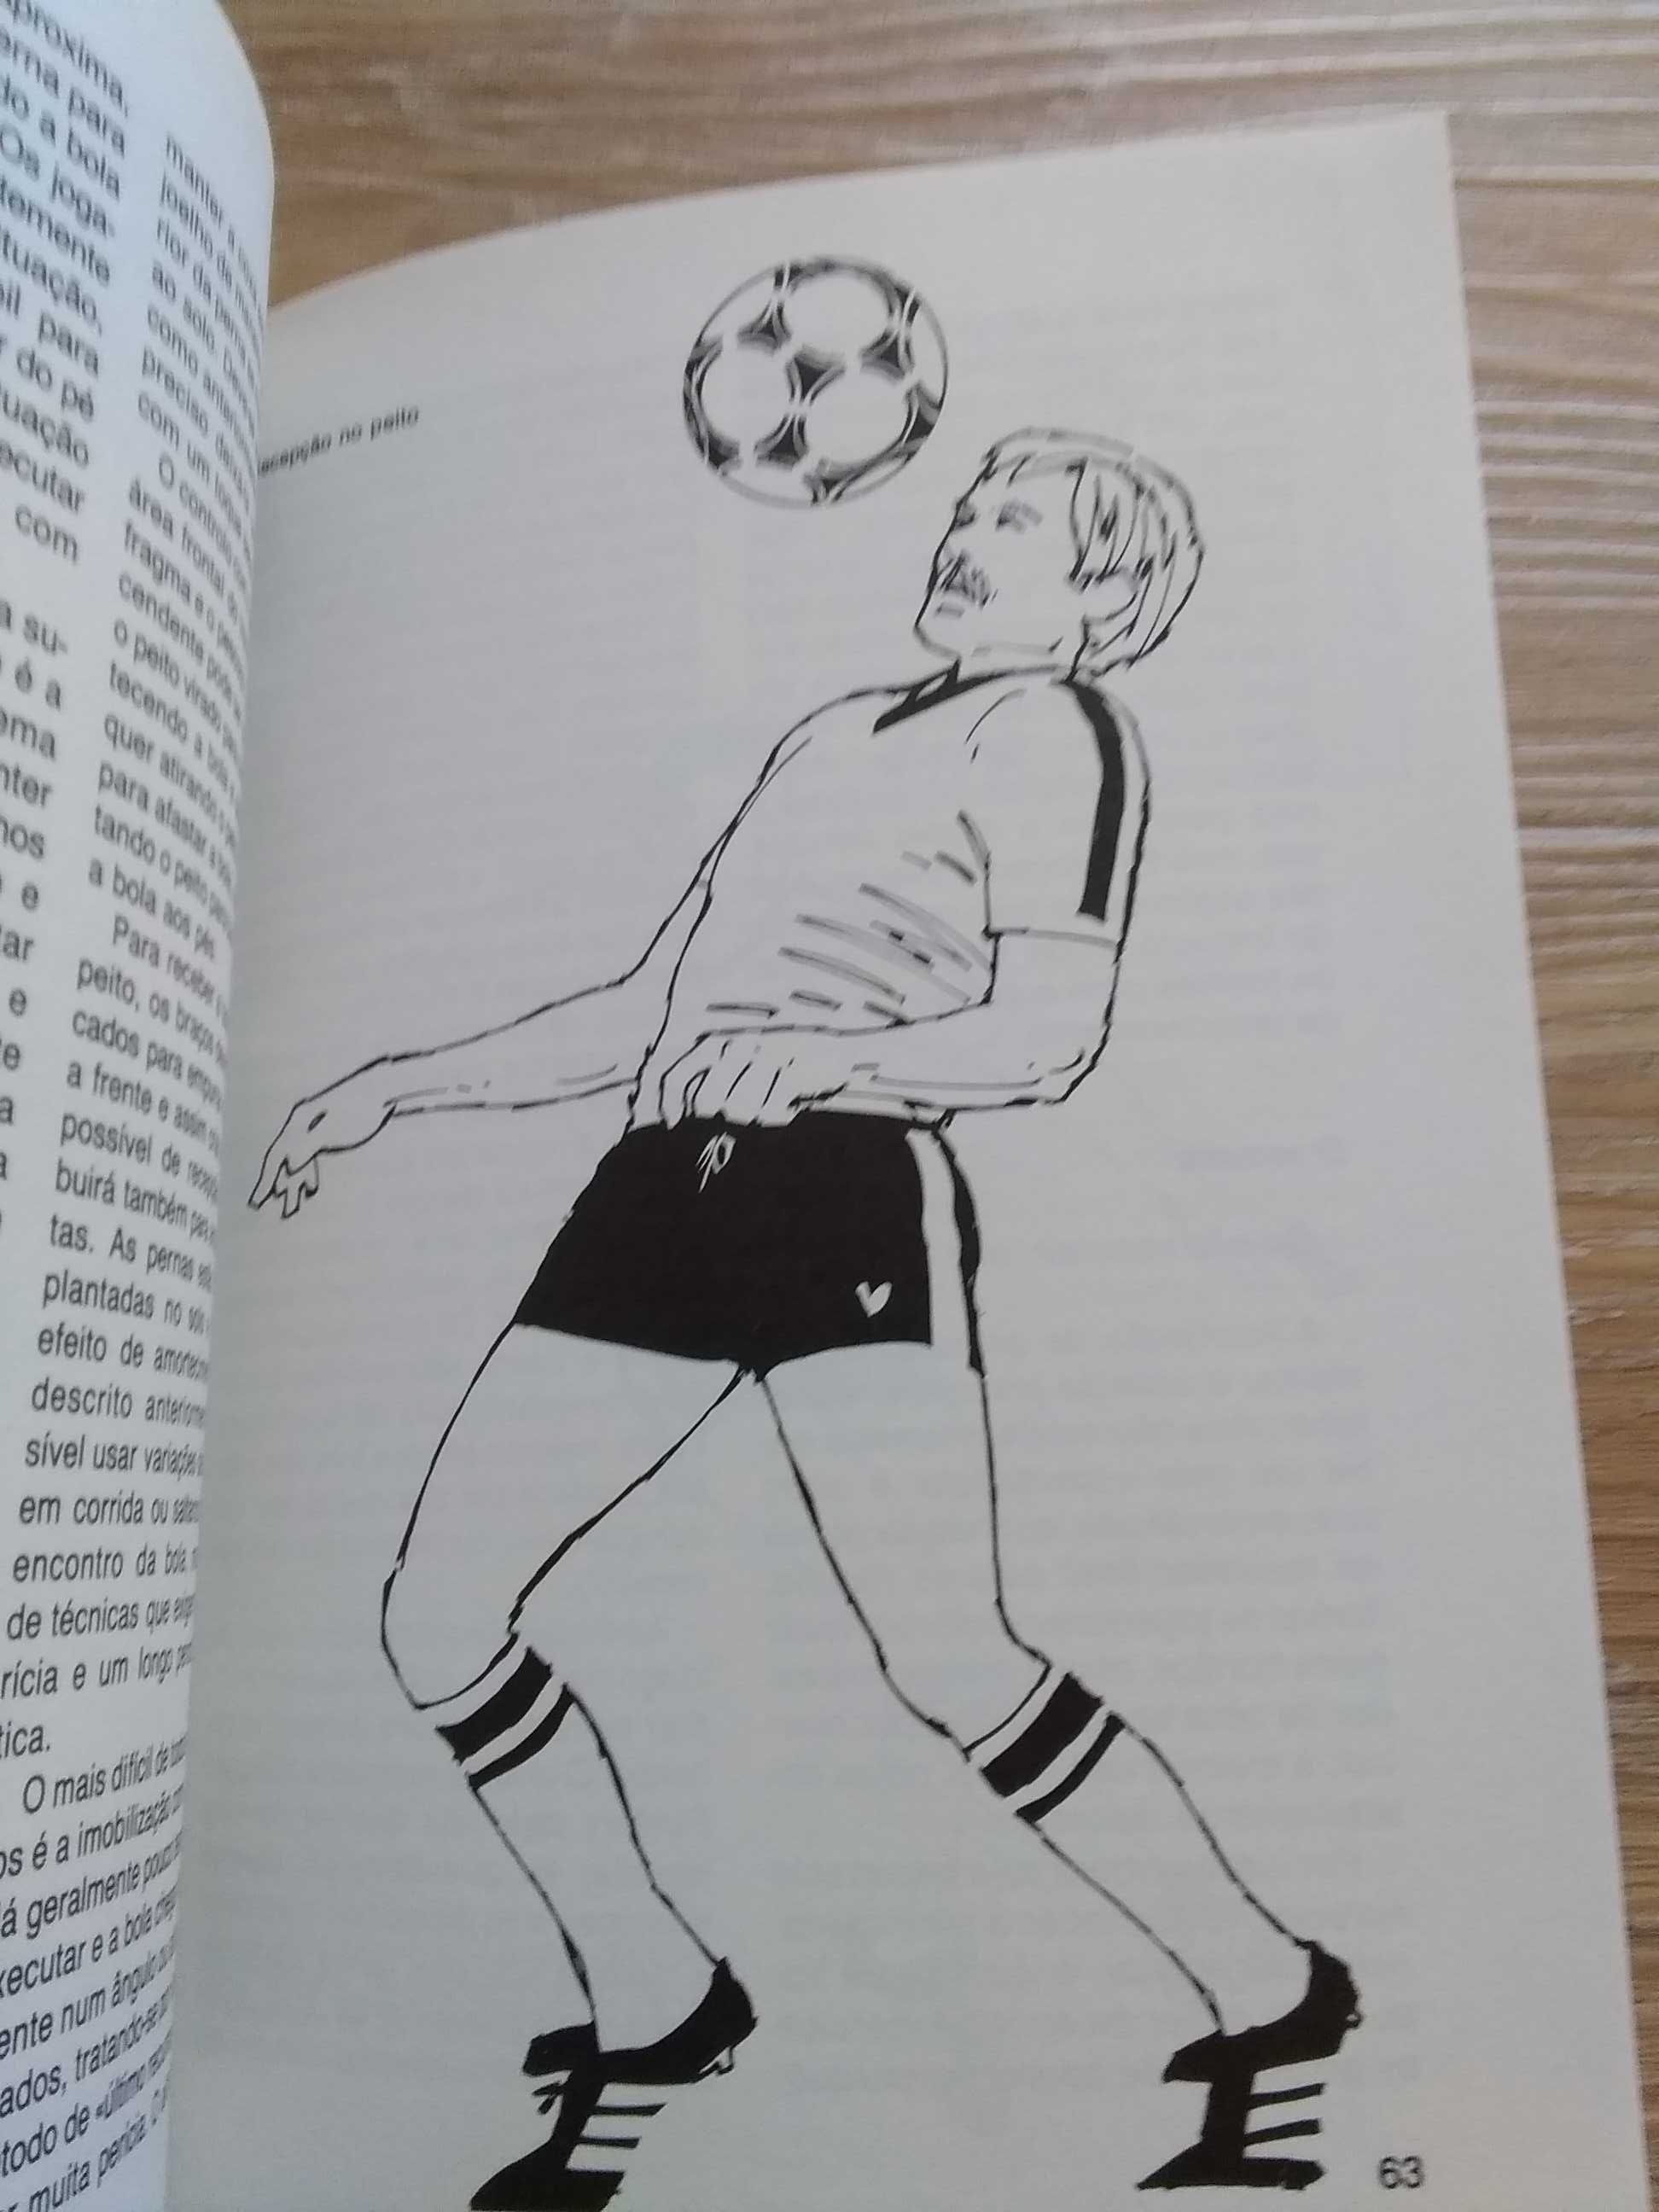 Guia pratico de futebol por Ken Goldman e outro (1990)